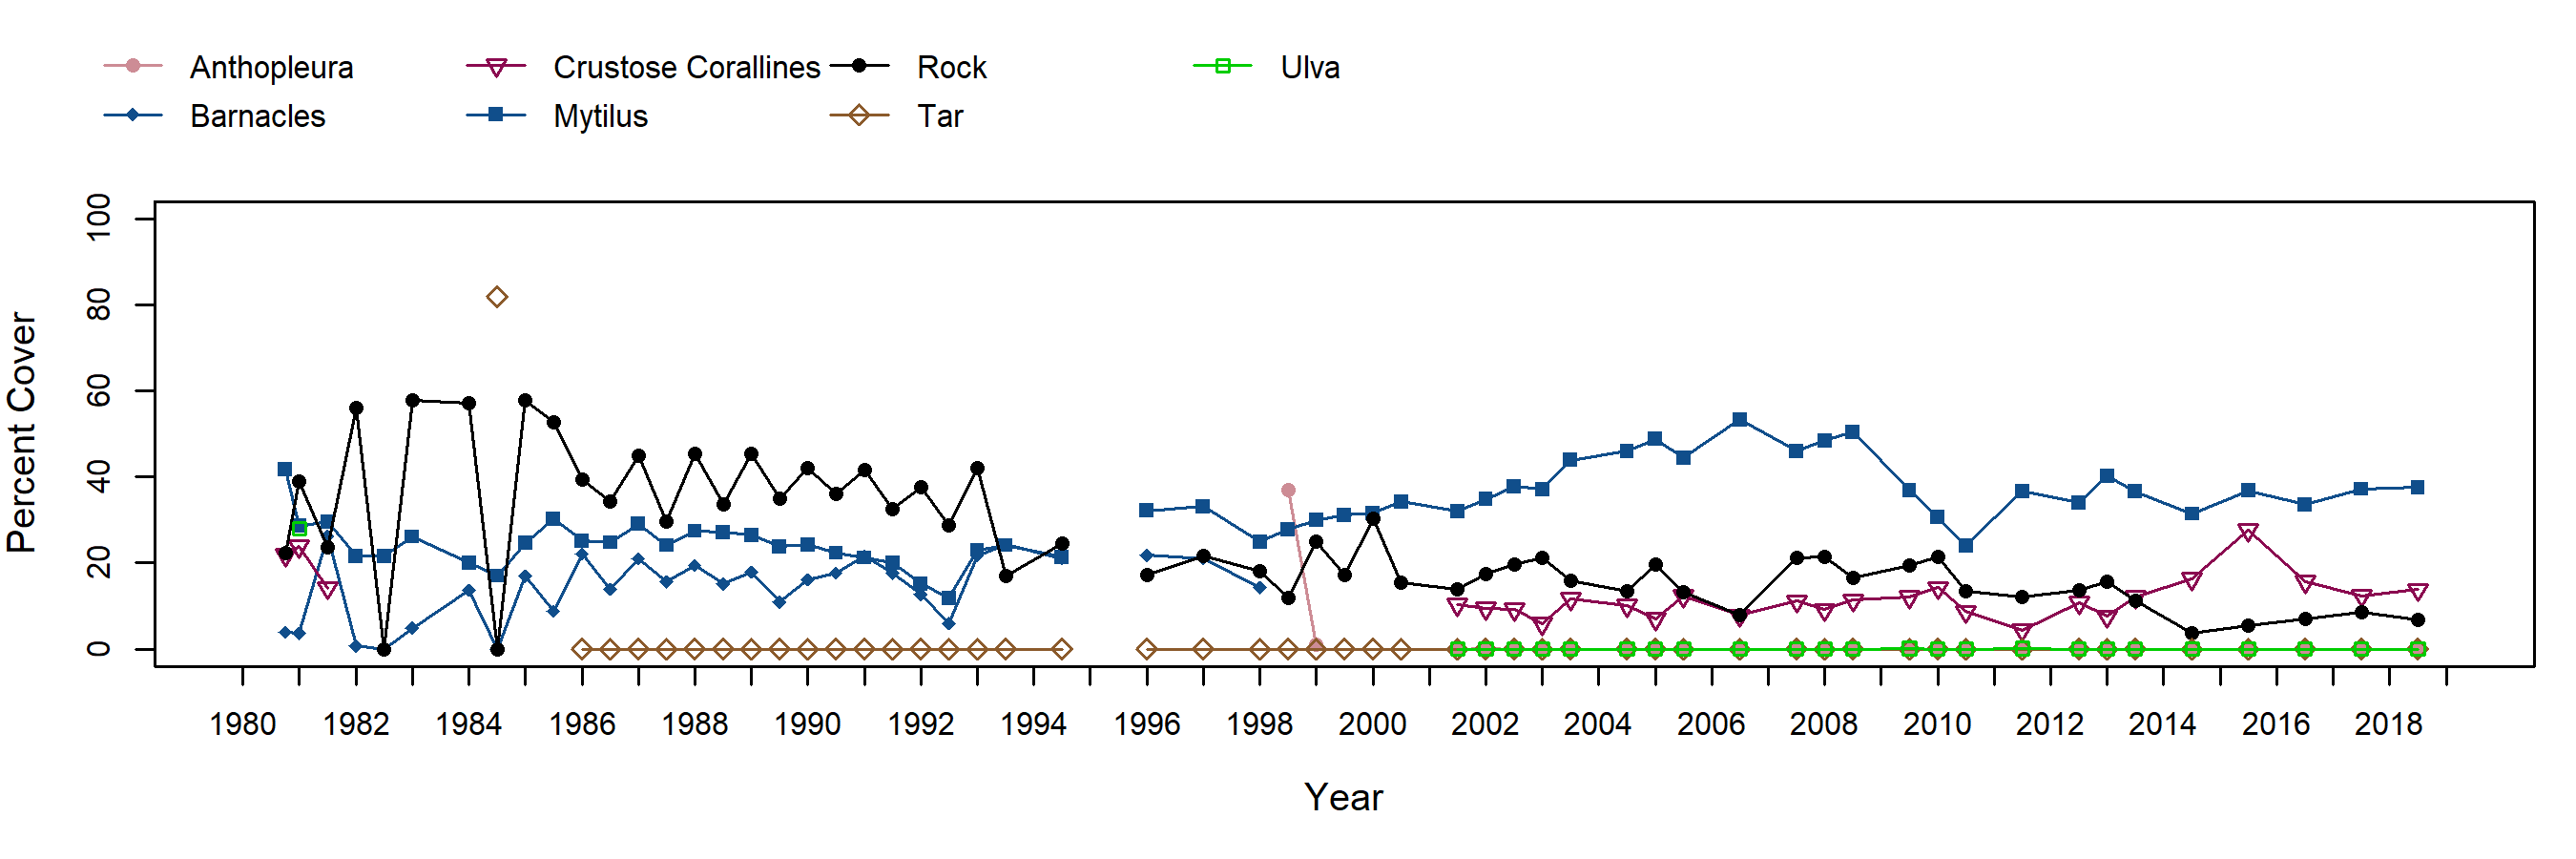 Cat Rock Mytilus trend plot